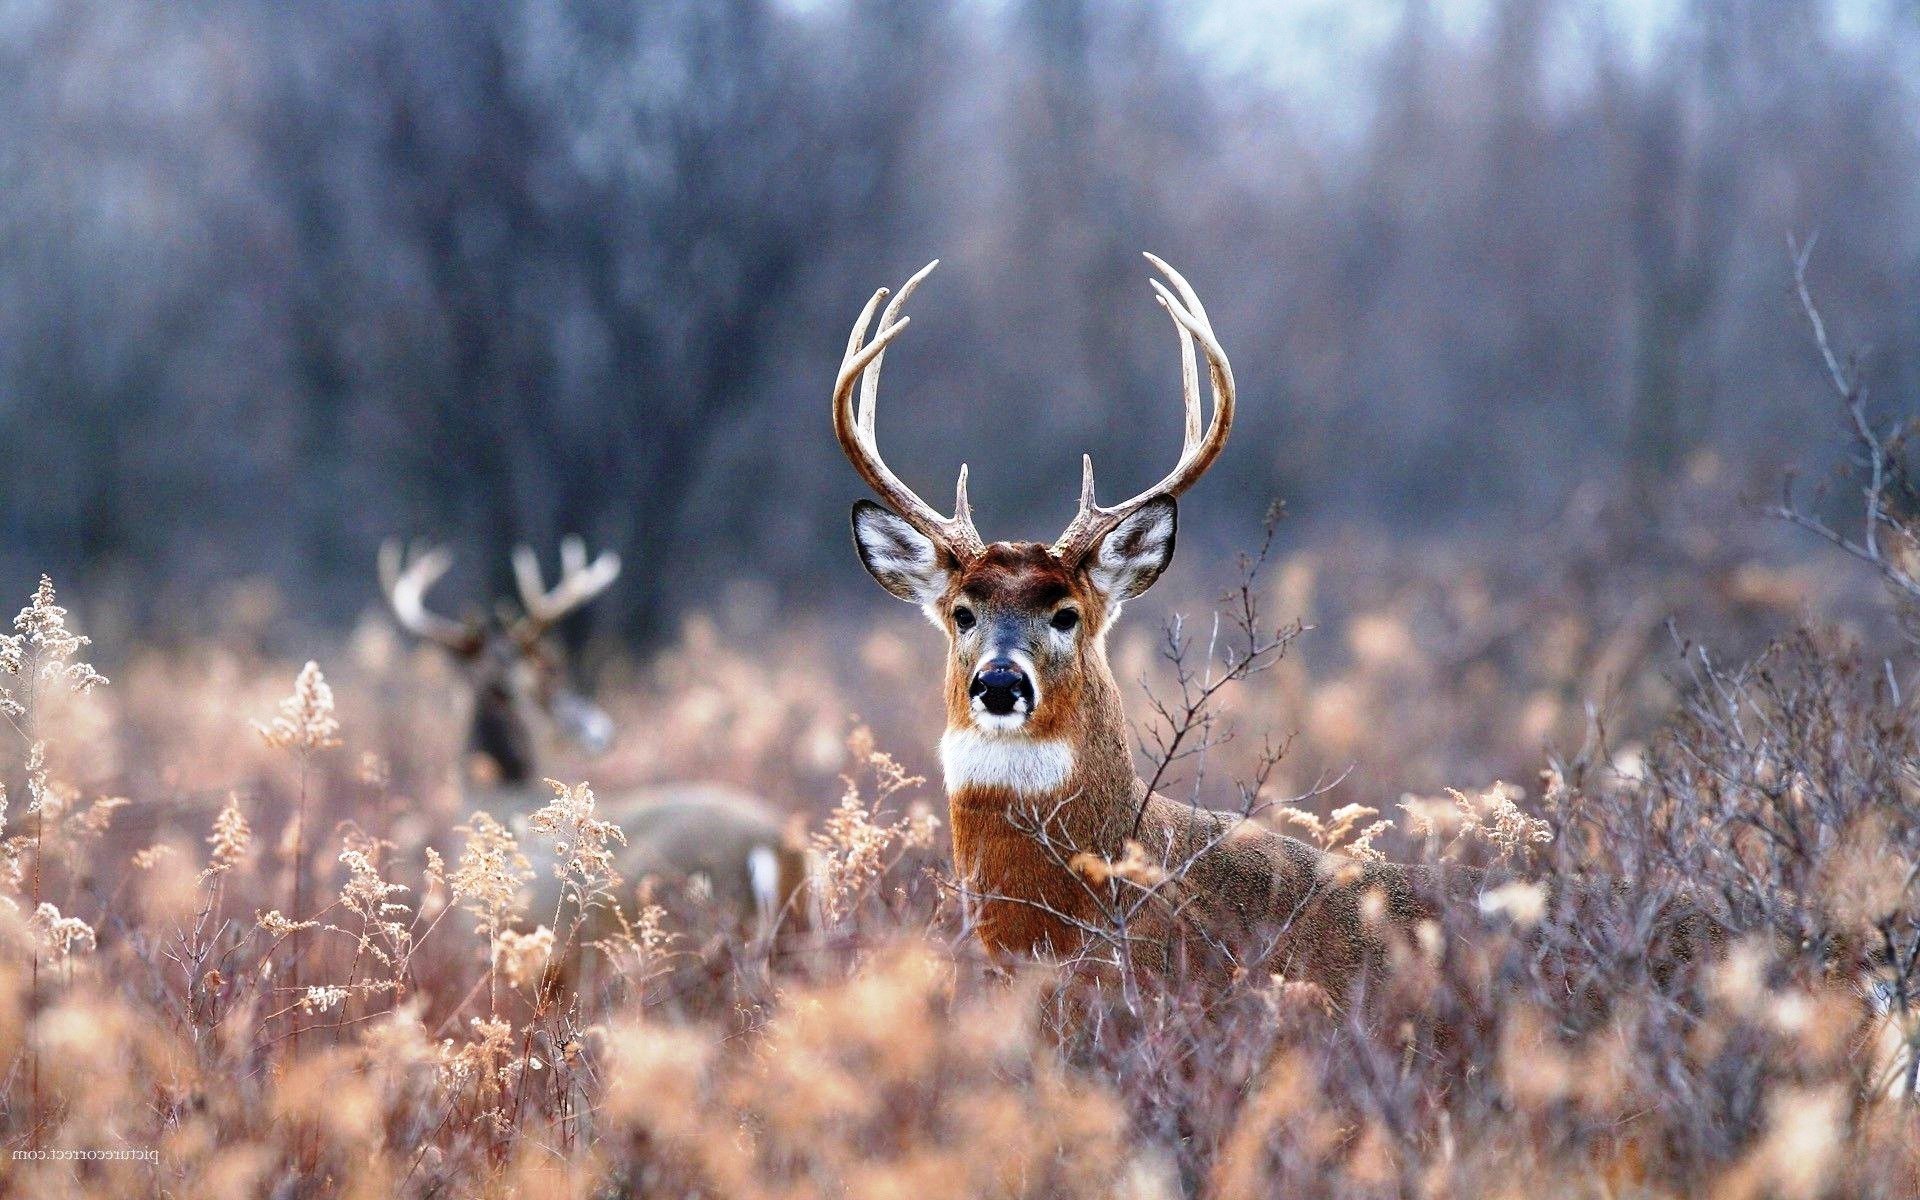 whitetail deer wallpaper,vertebrate,mammal,wildlife,deer,white tailed deer